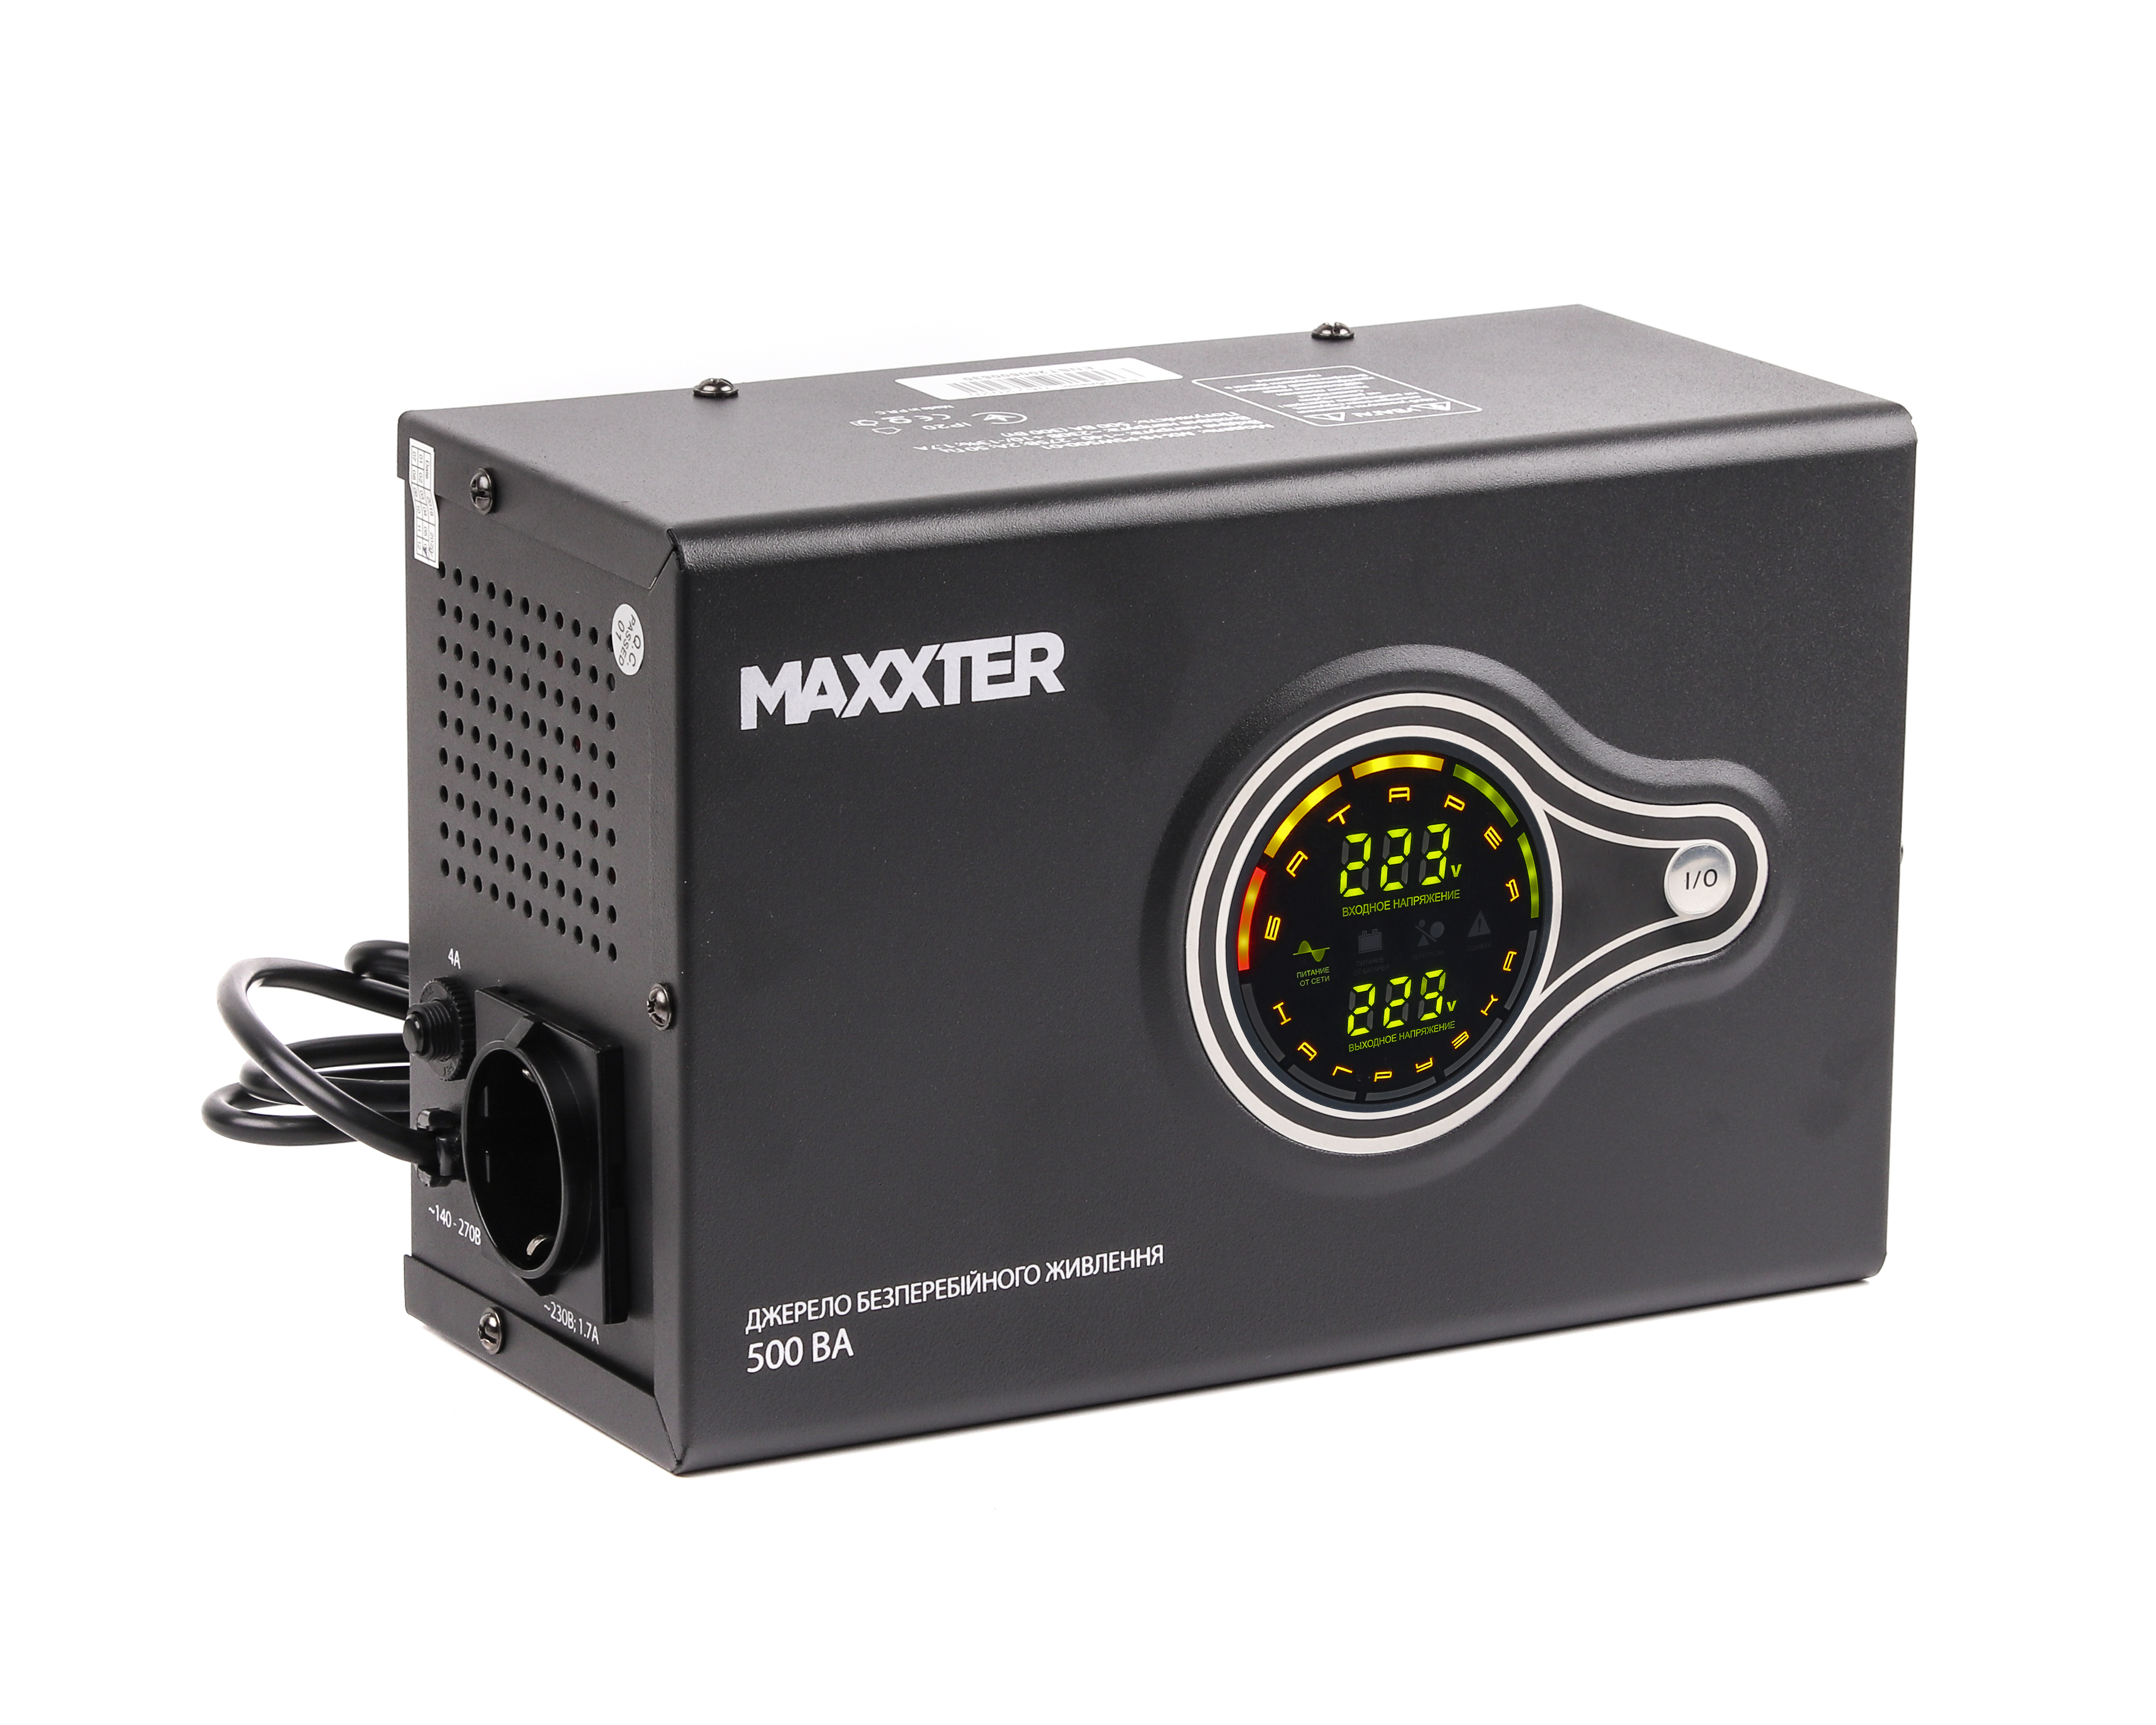 Інструкція джерело безперебійного живлення Maxxter MX-HI-PSW500-01